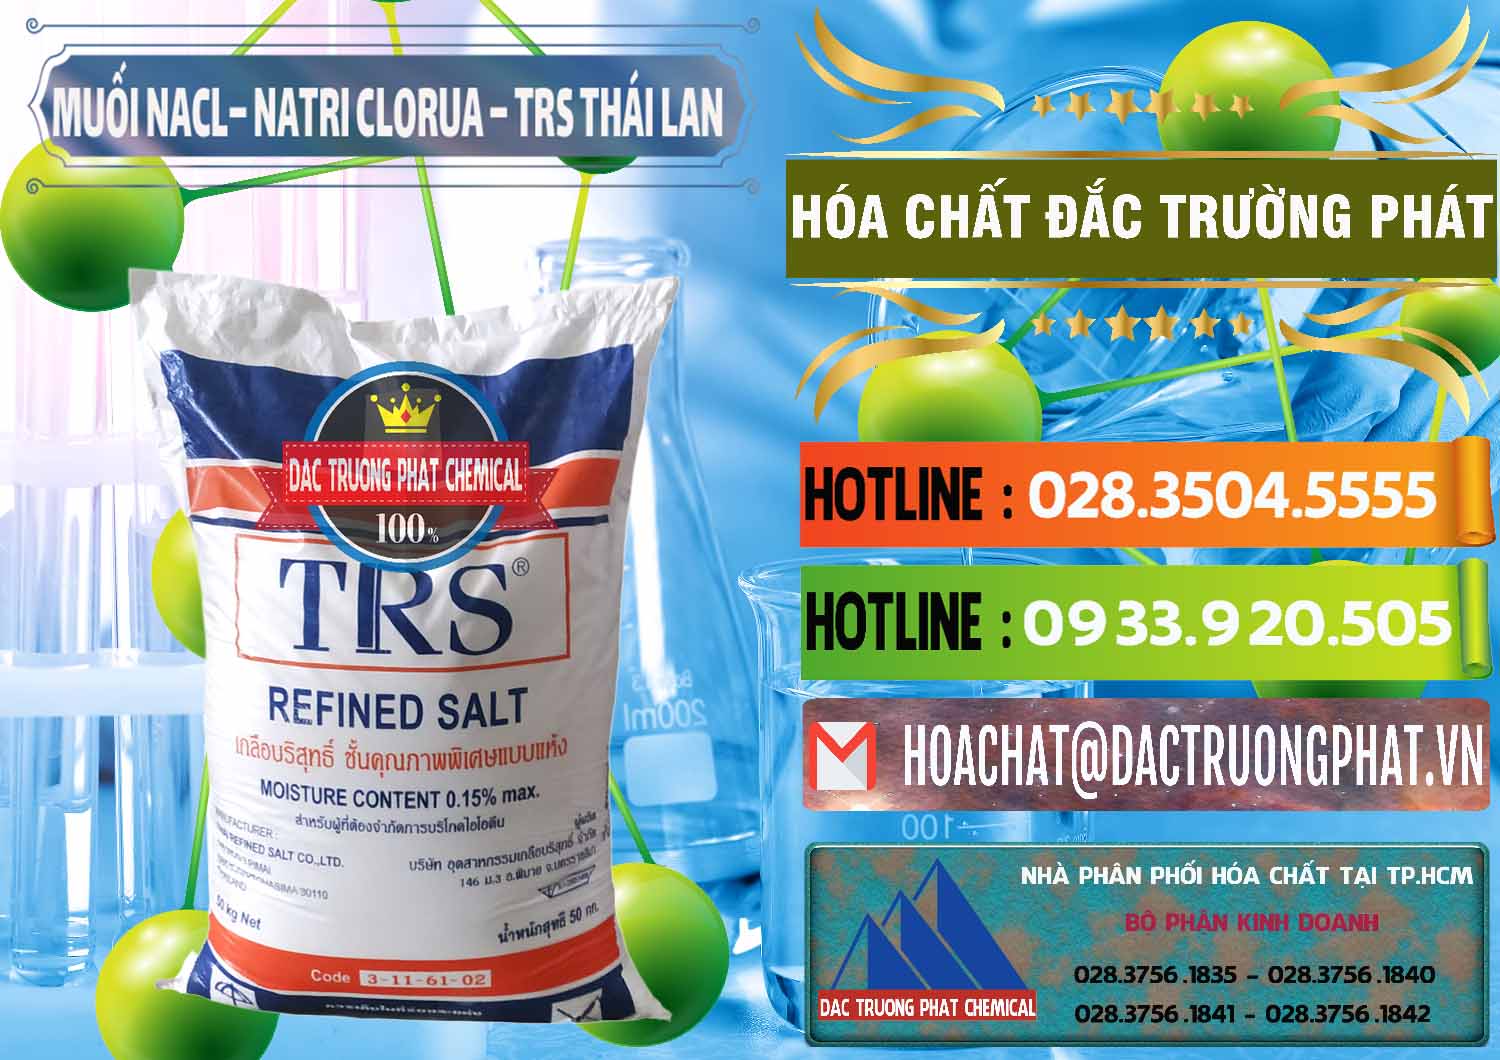 Cty phân phối & bán Muối NaCL – Sodium Chloride TRS Thái Lan - 0096 - Cty chuyên phân phối ( kinh doanh ) hóa chất tại TP.HCM - cungcaphoachat.com.vn